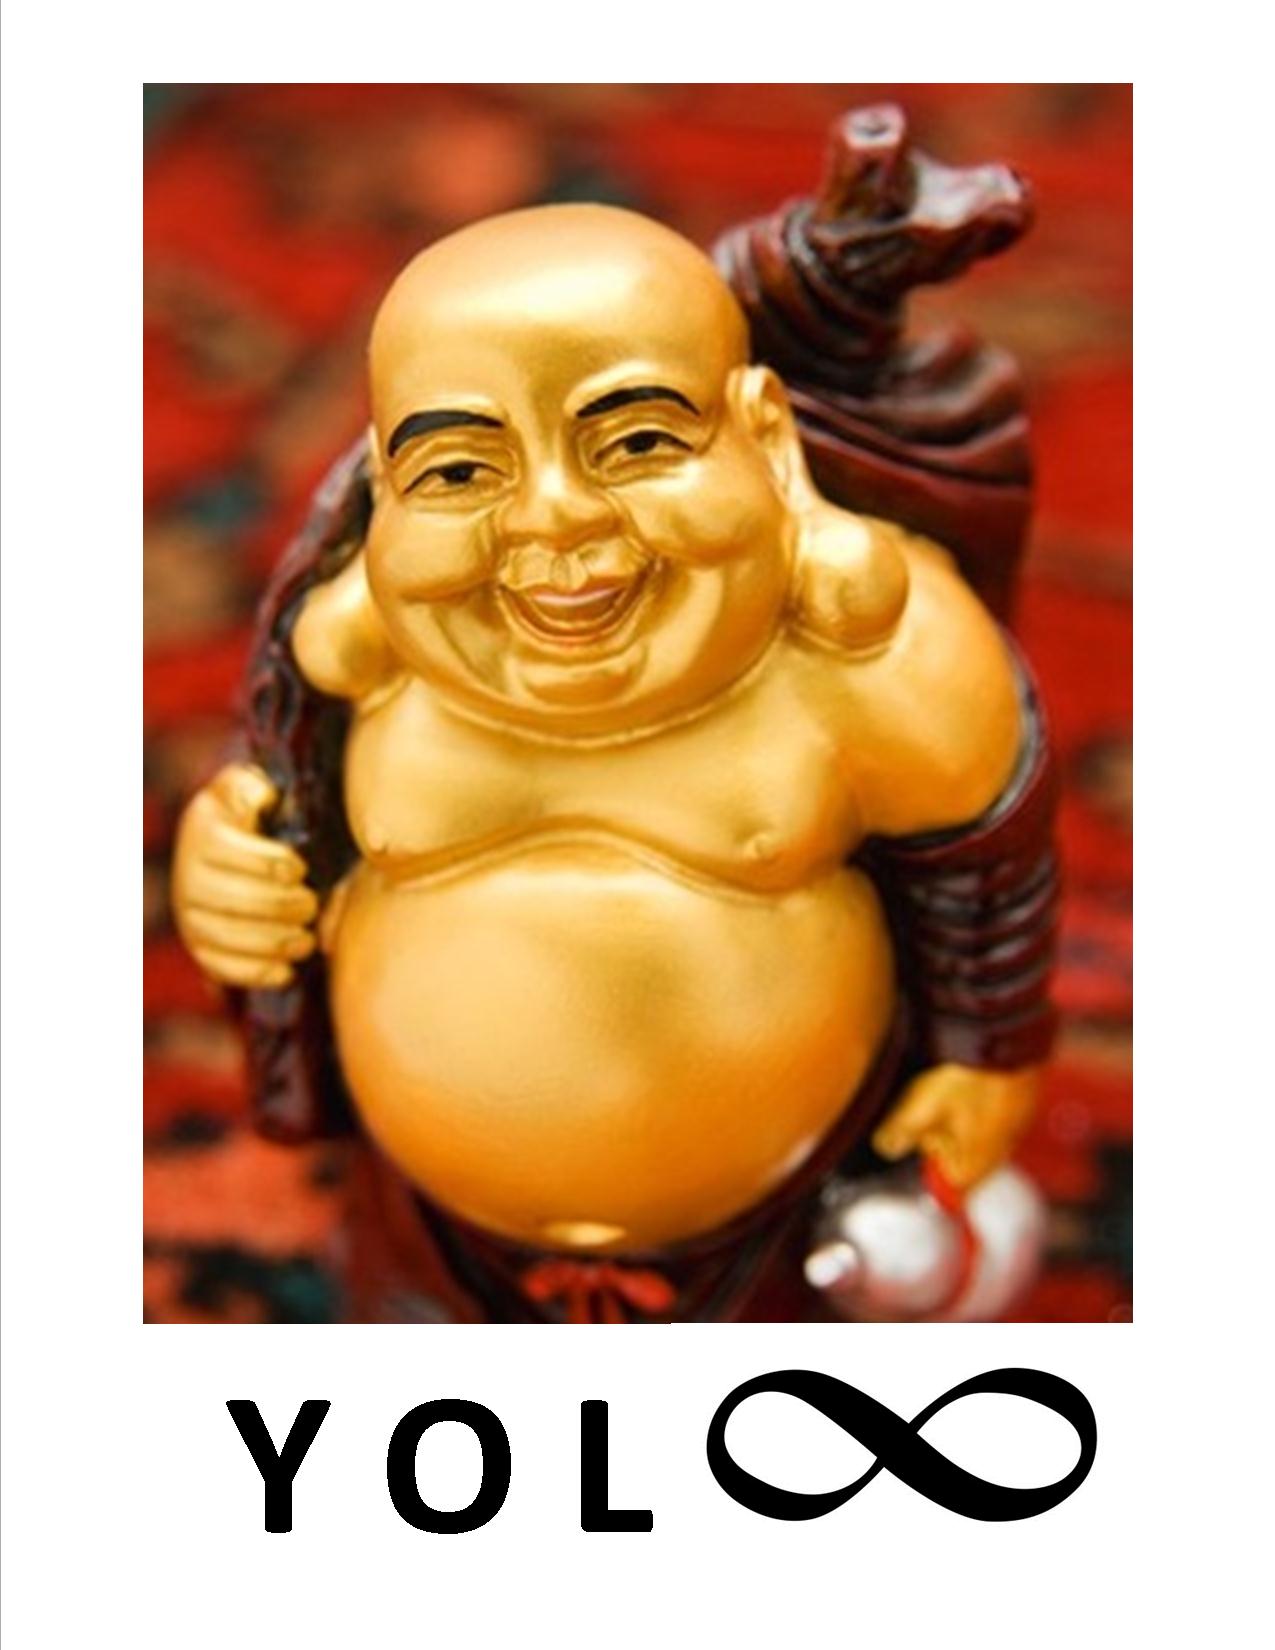 Buddah and the art of YOLO